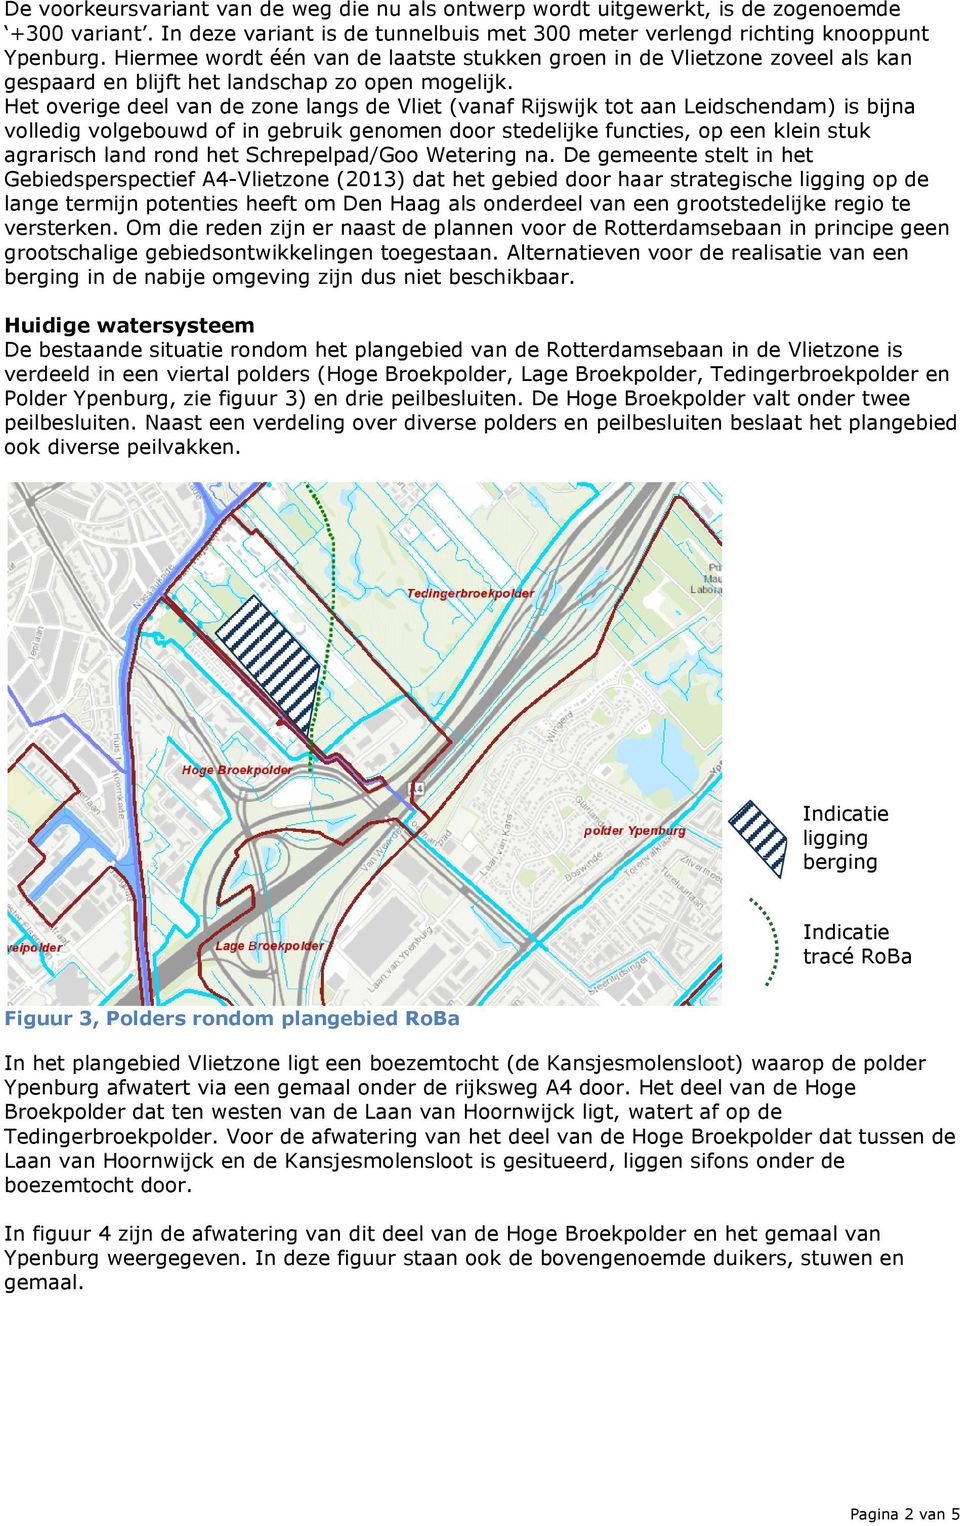 Het overige deel van de zone langs de Vliet (vanaf Rijswijk tot aan Leidschendam) is bijna volledig volgebouwd of in gebruik genomen door stedelijke functies, op een klein stuk agrarisch land rond